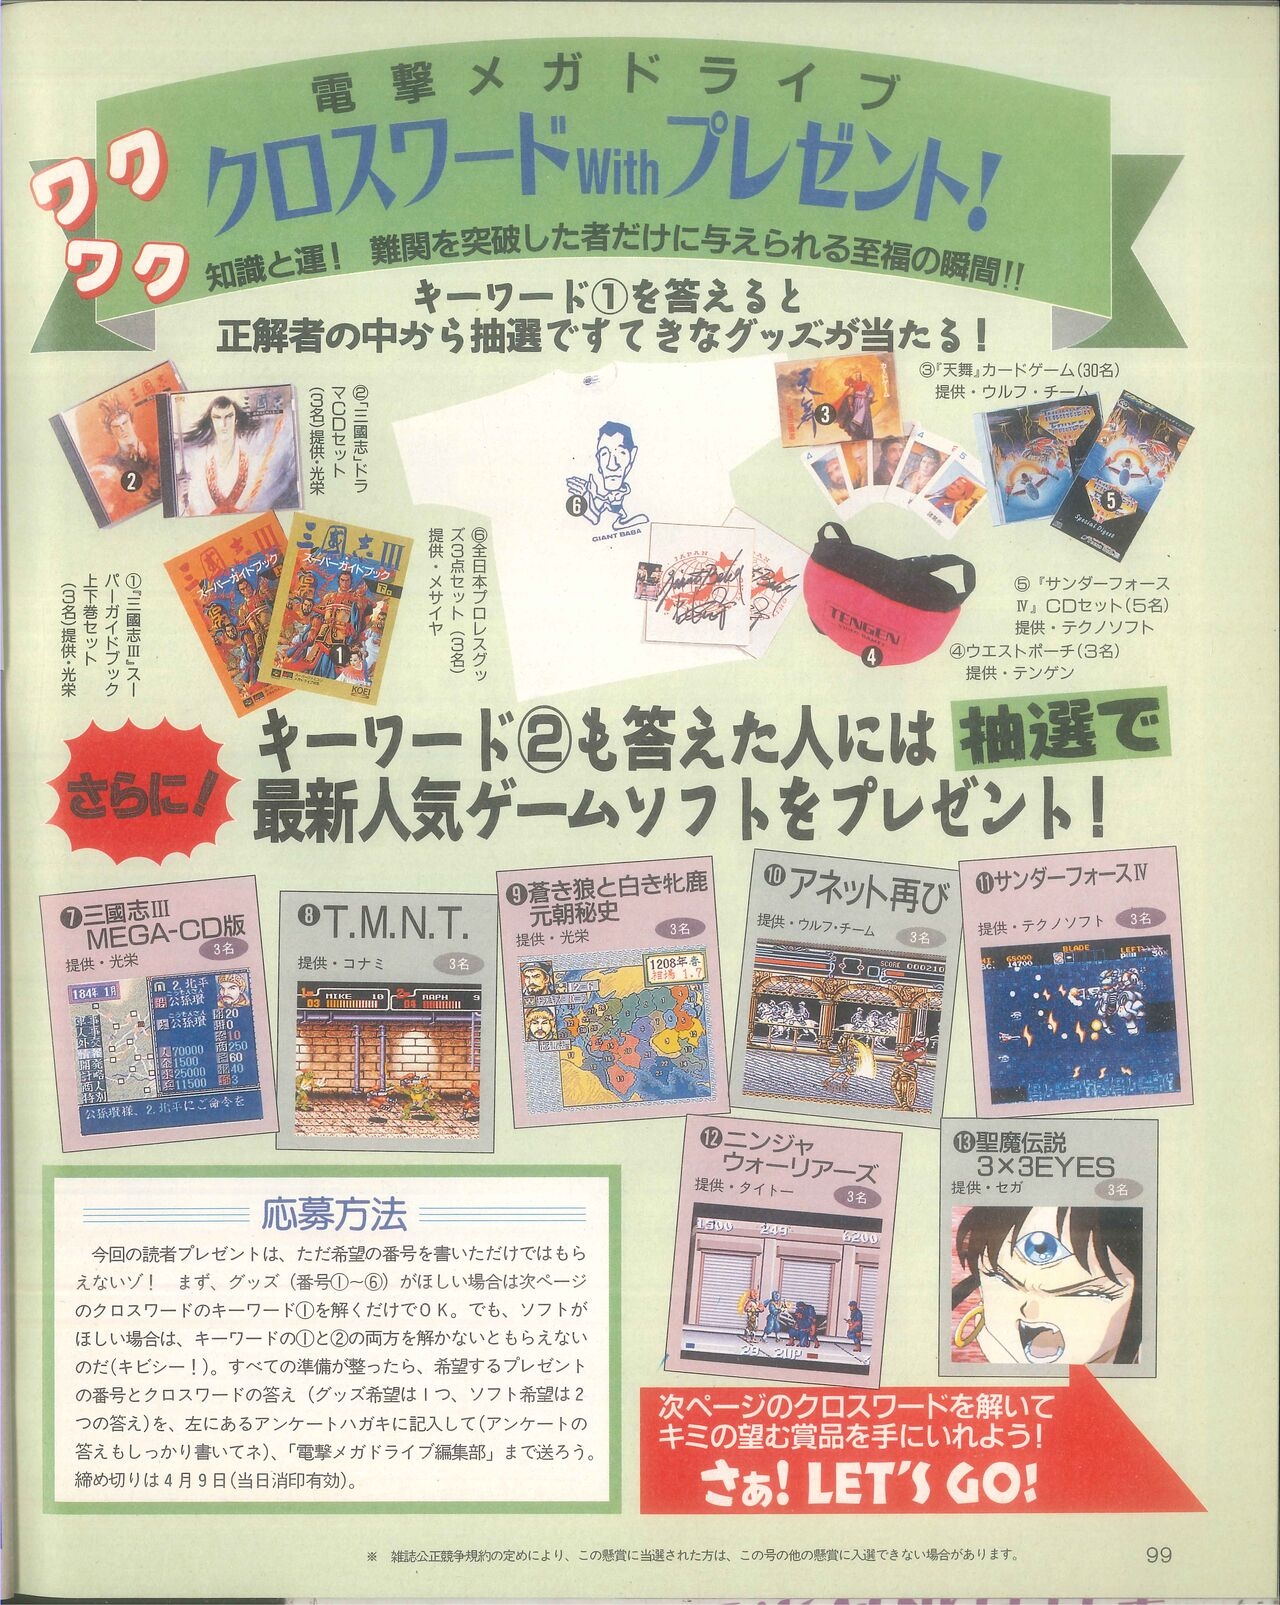 Dengeki Mega Drive Vol.2 (Sega Genesis) (April 1993) 51